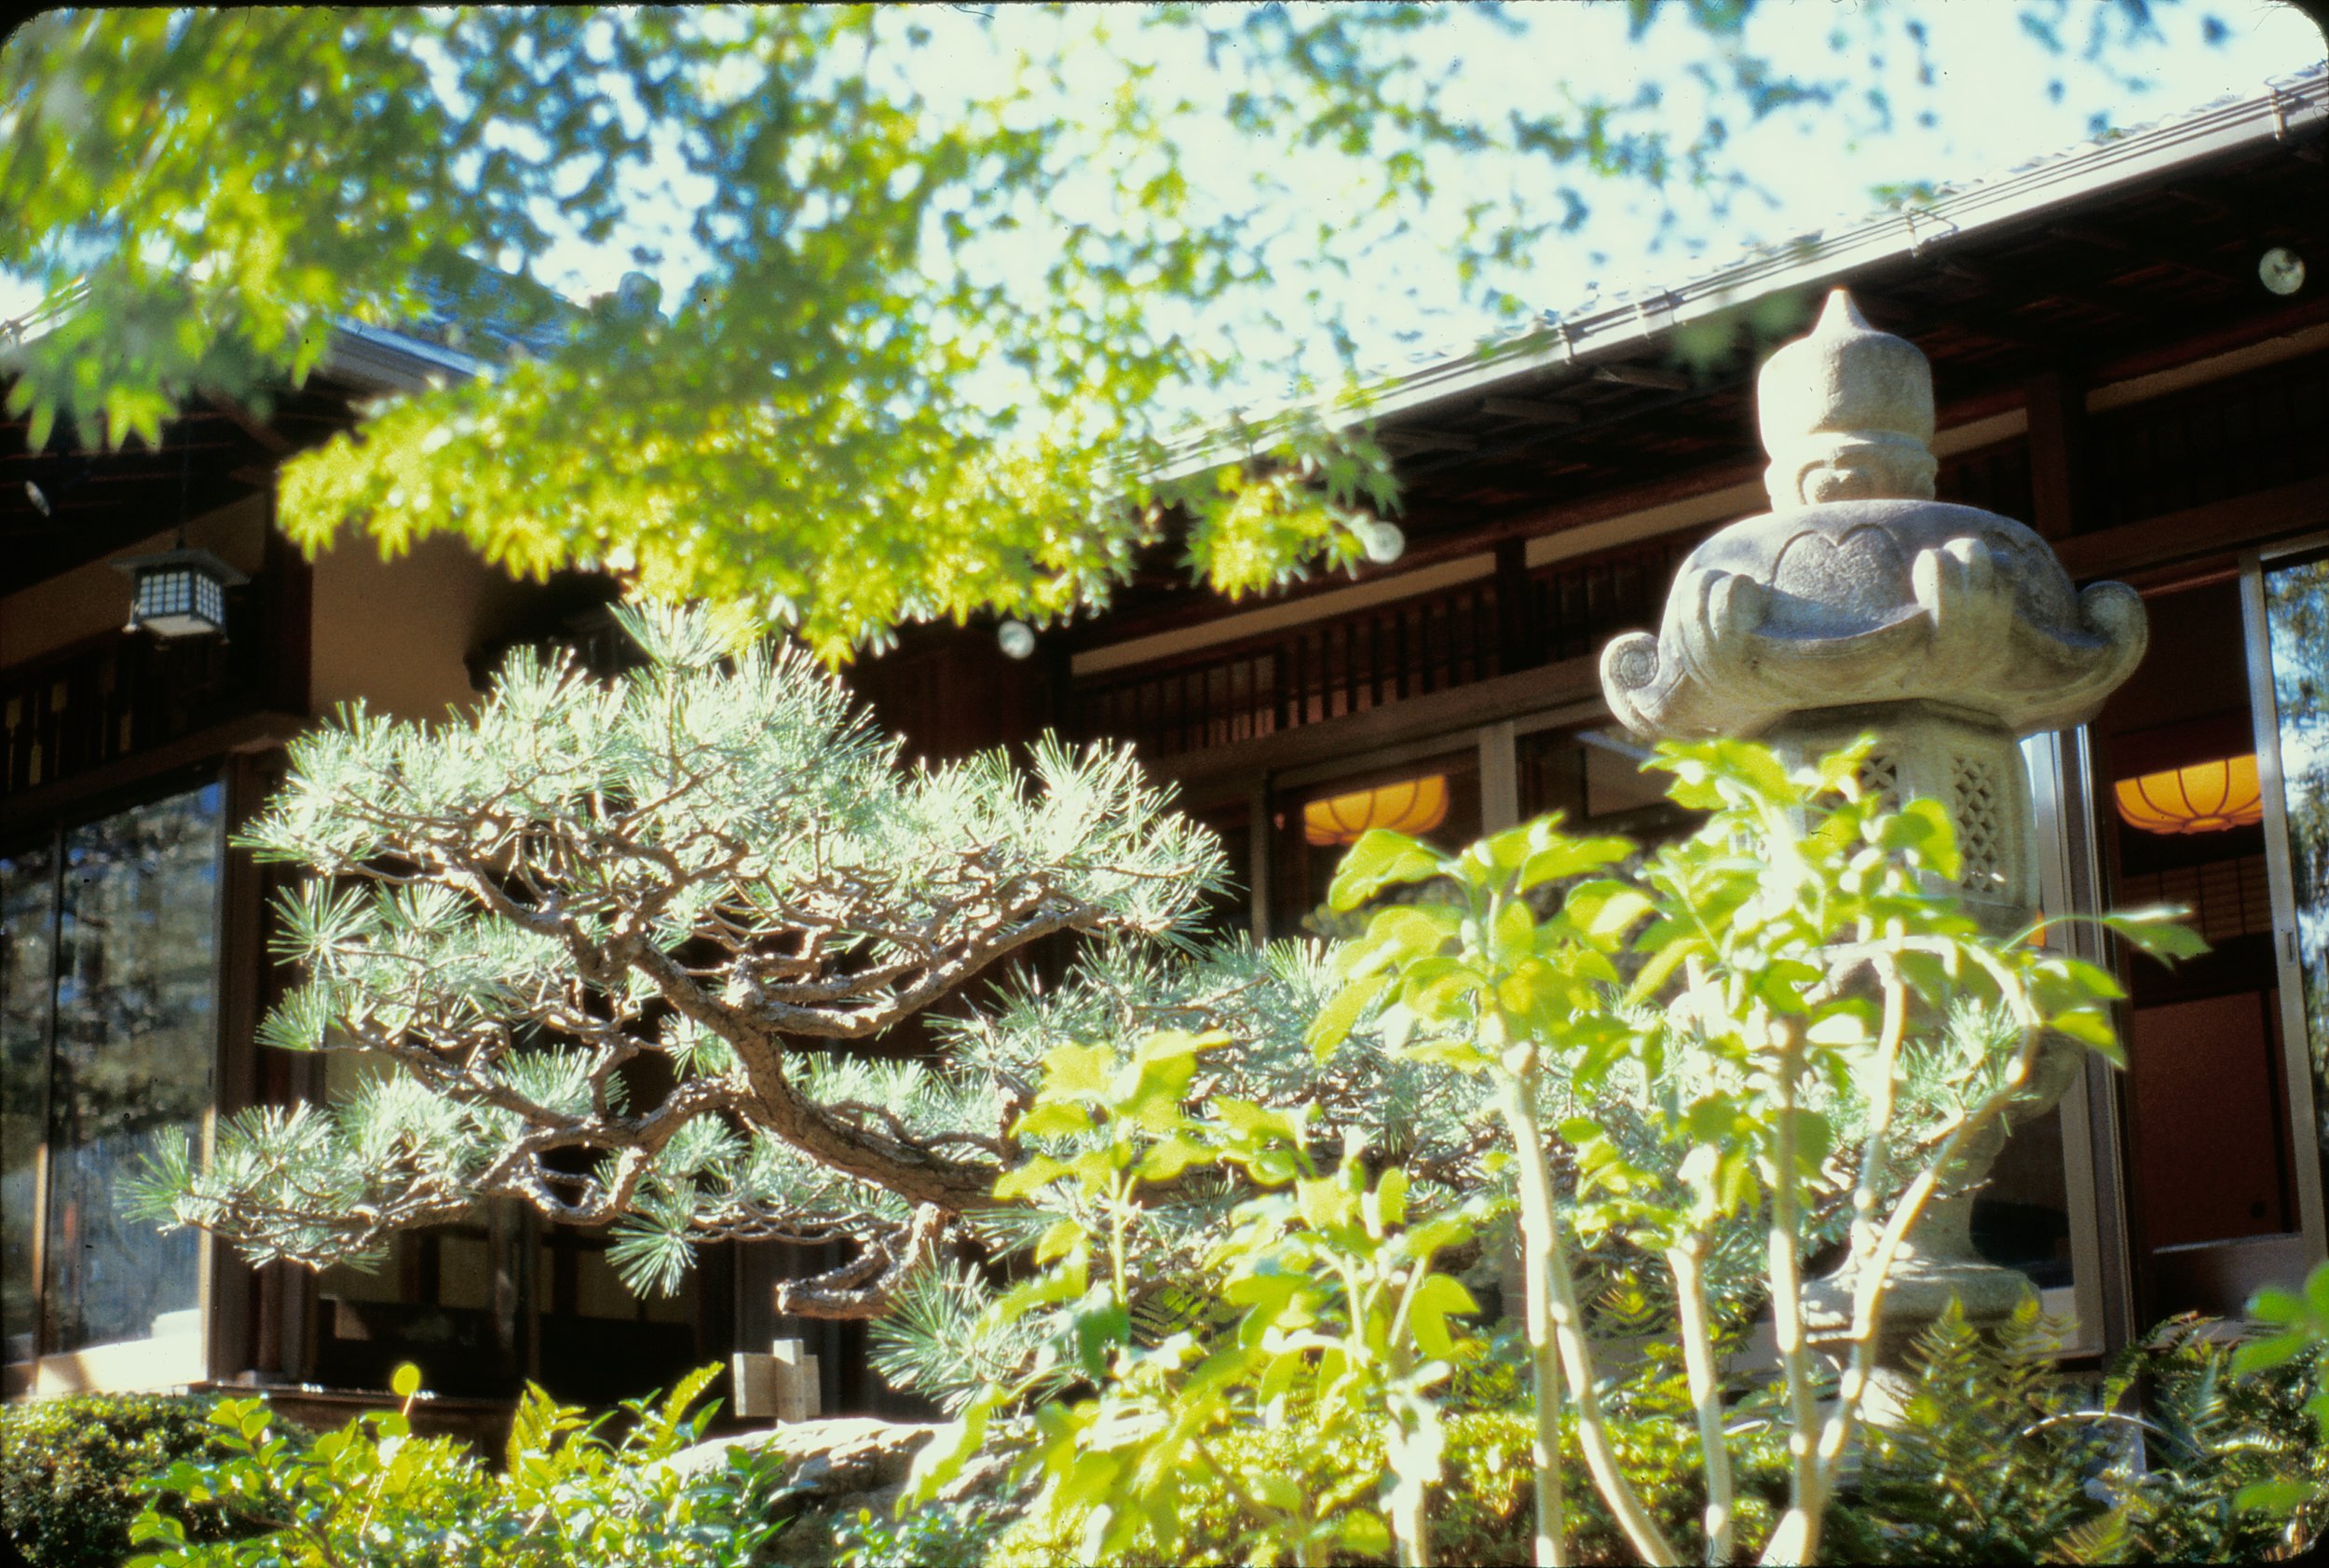 Matsu, pine